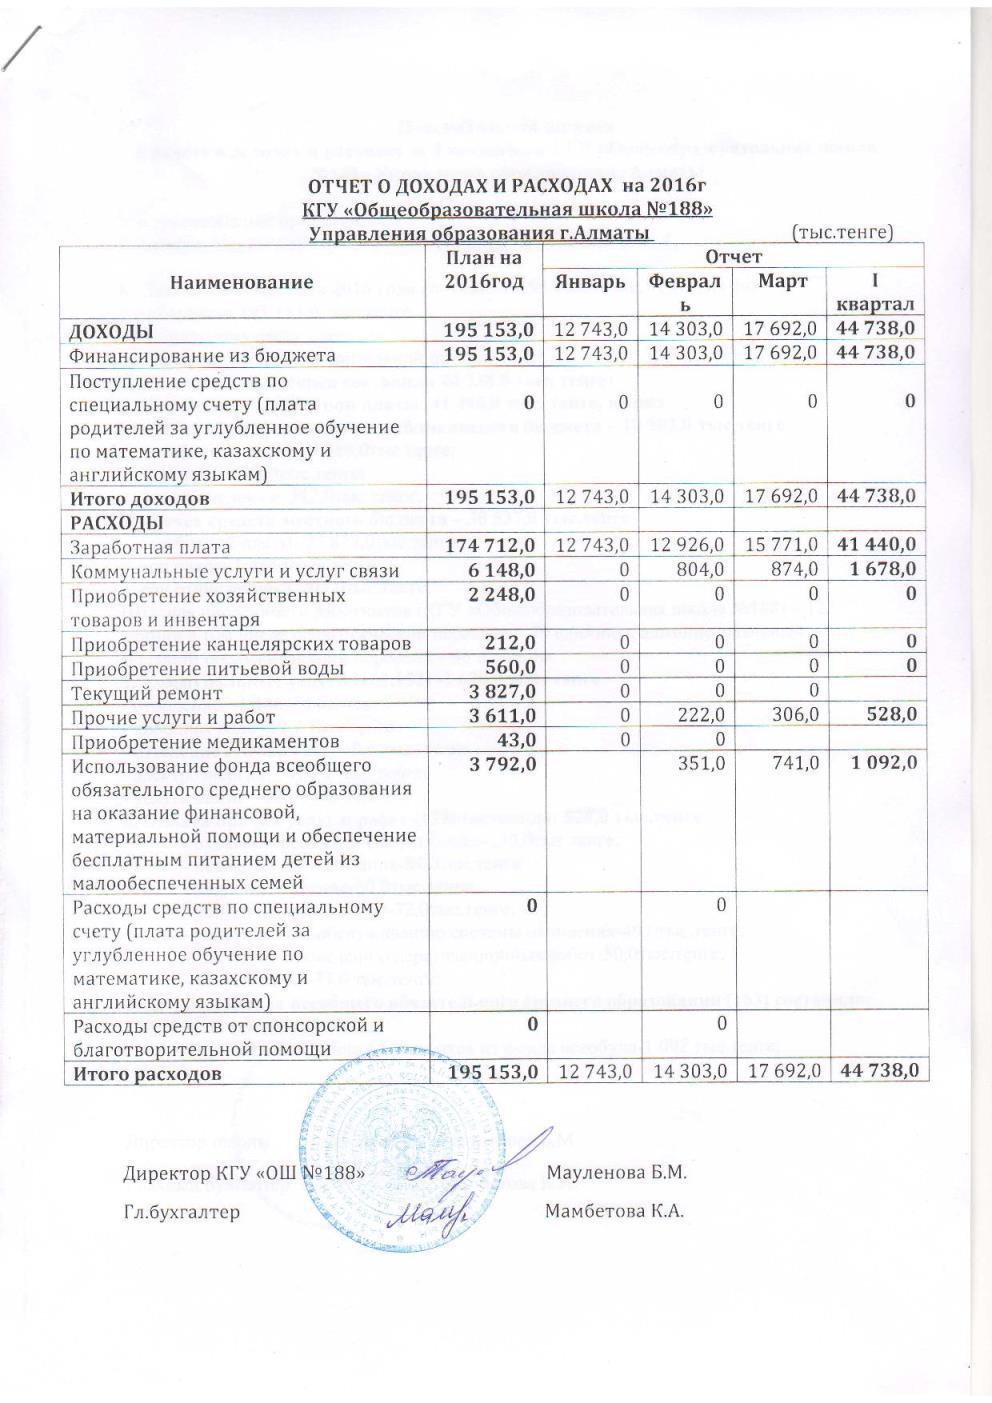 Отчет о доходах и расходах за 1квартал 2016 и пояснительная записка